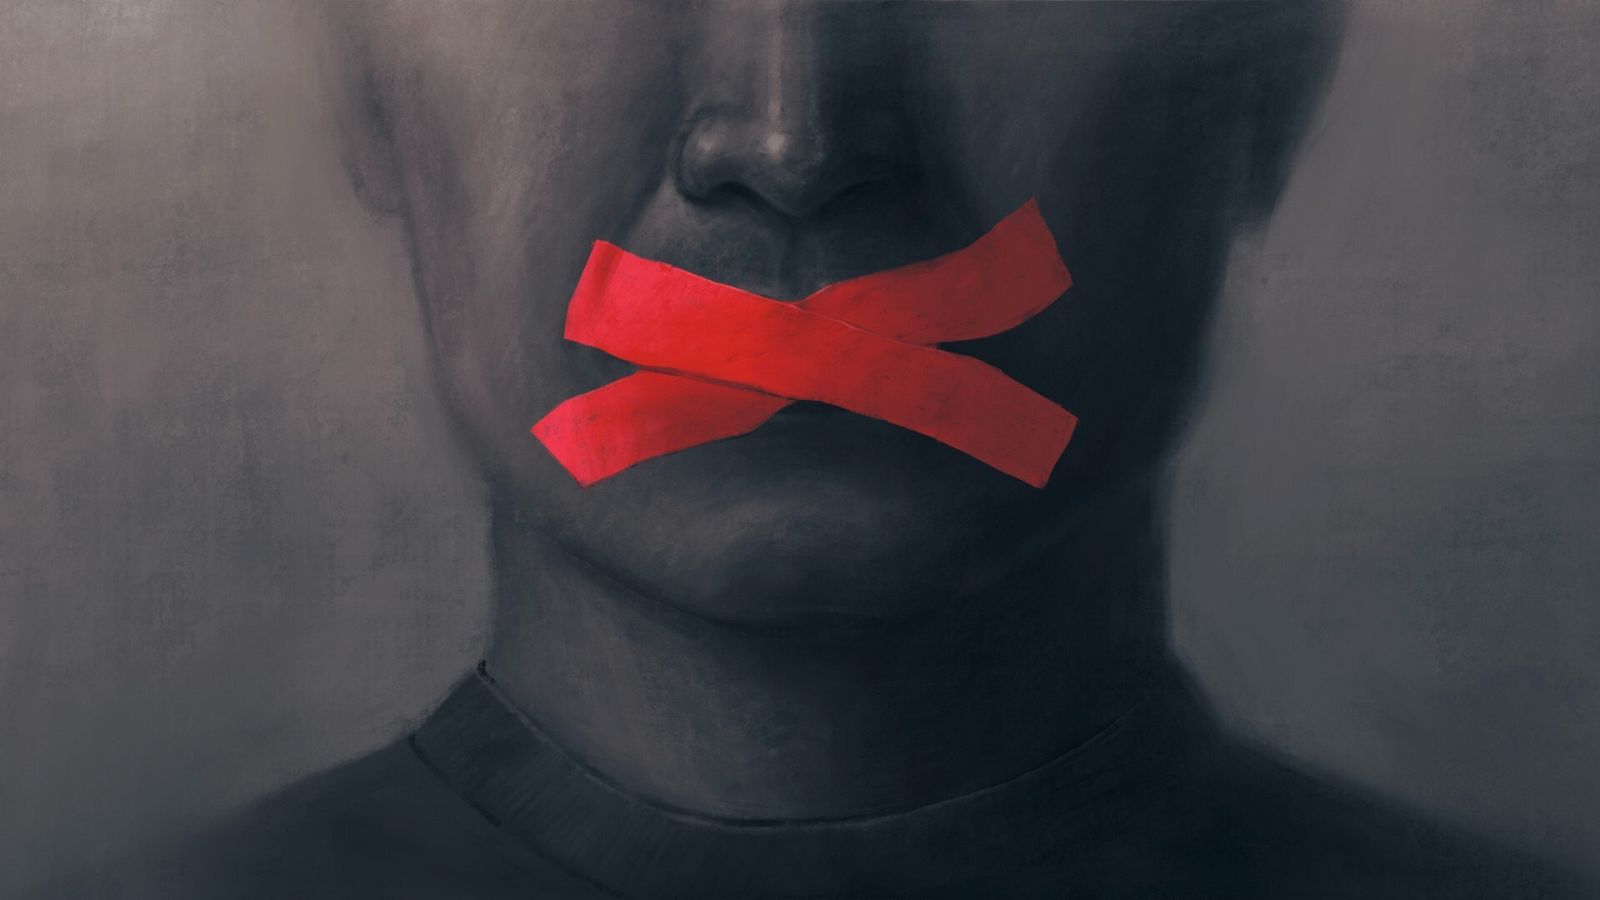 Un retrato con la boca tapada que simboliza la censura